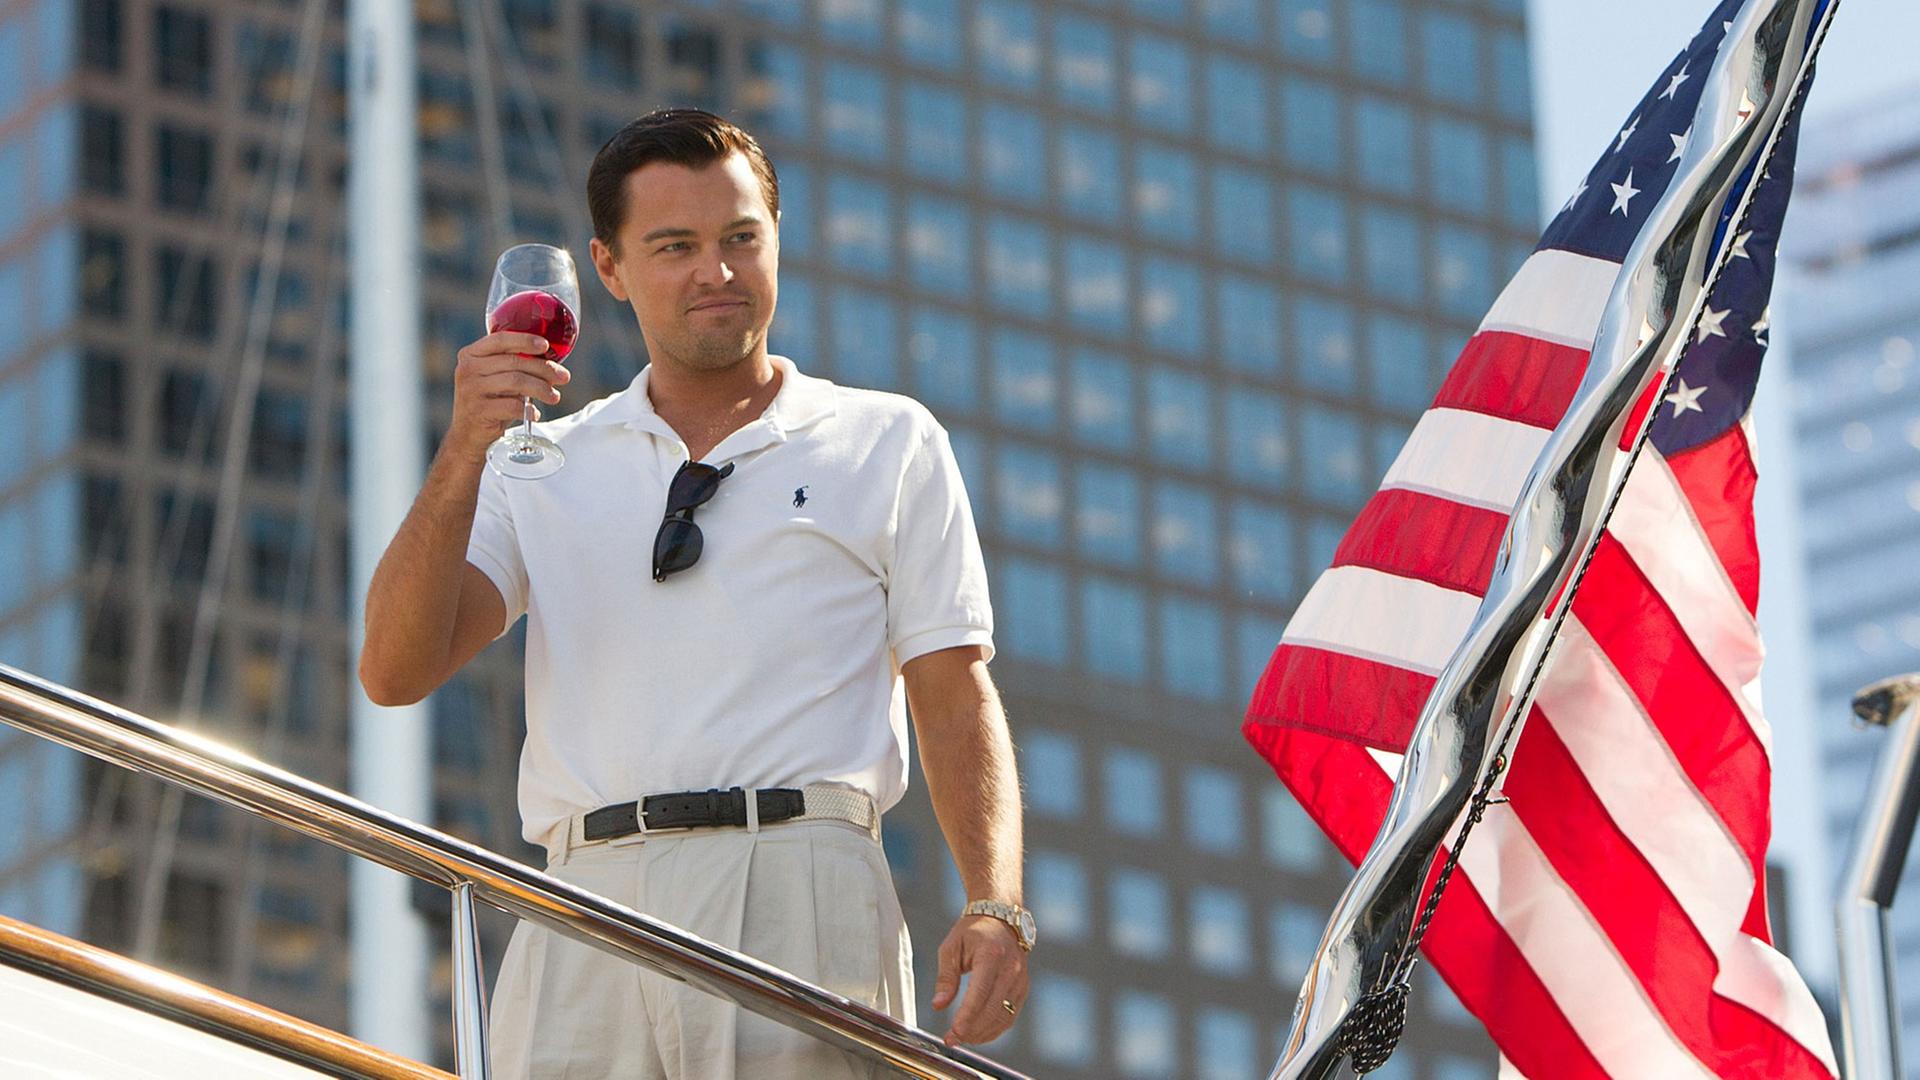 Leonardo DiCaprio steht neben einer US-Flagge auf einem Schiff und hält einen Drink hoch